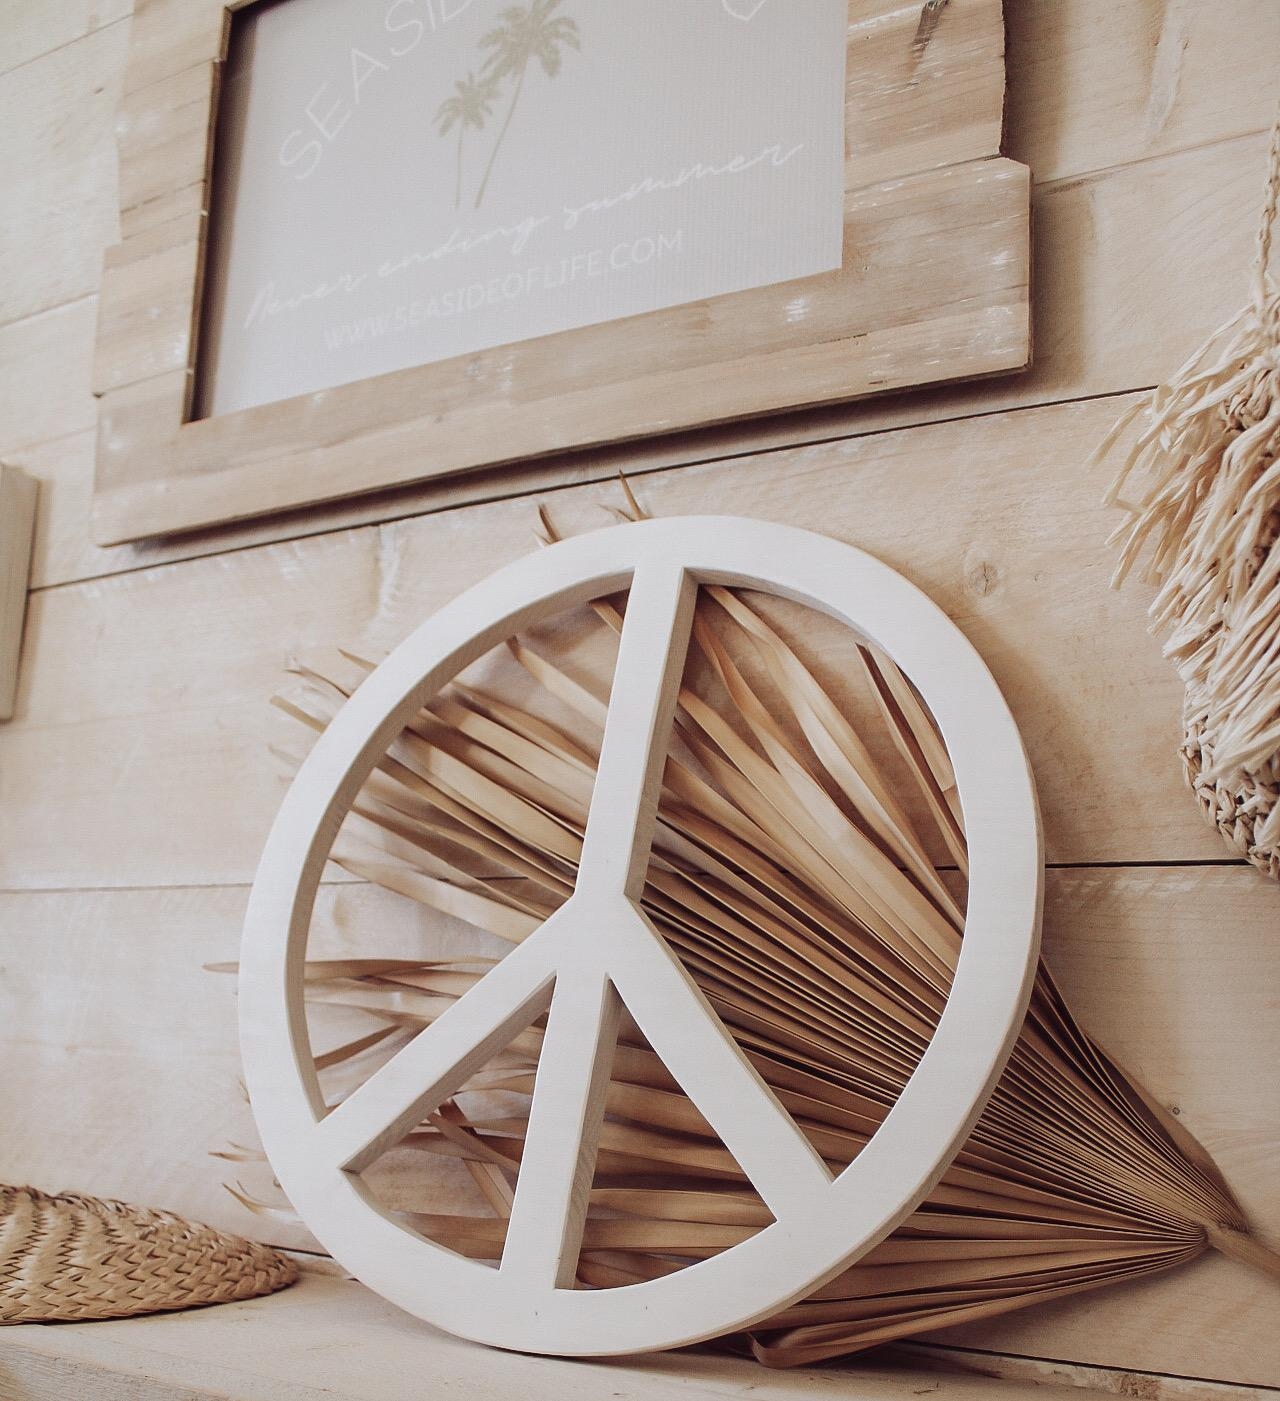 Boho summer 
Das Peacezeichen aus Holz und natürliche Deko wie Palmenblätter und Seegras-tolle Kombination! #couchstyle